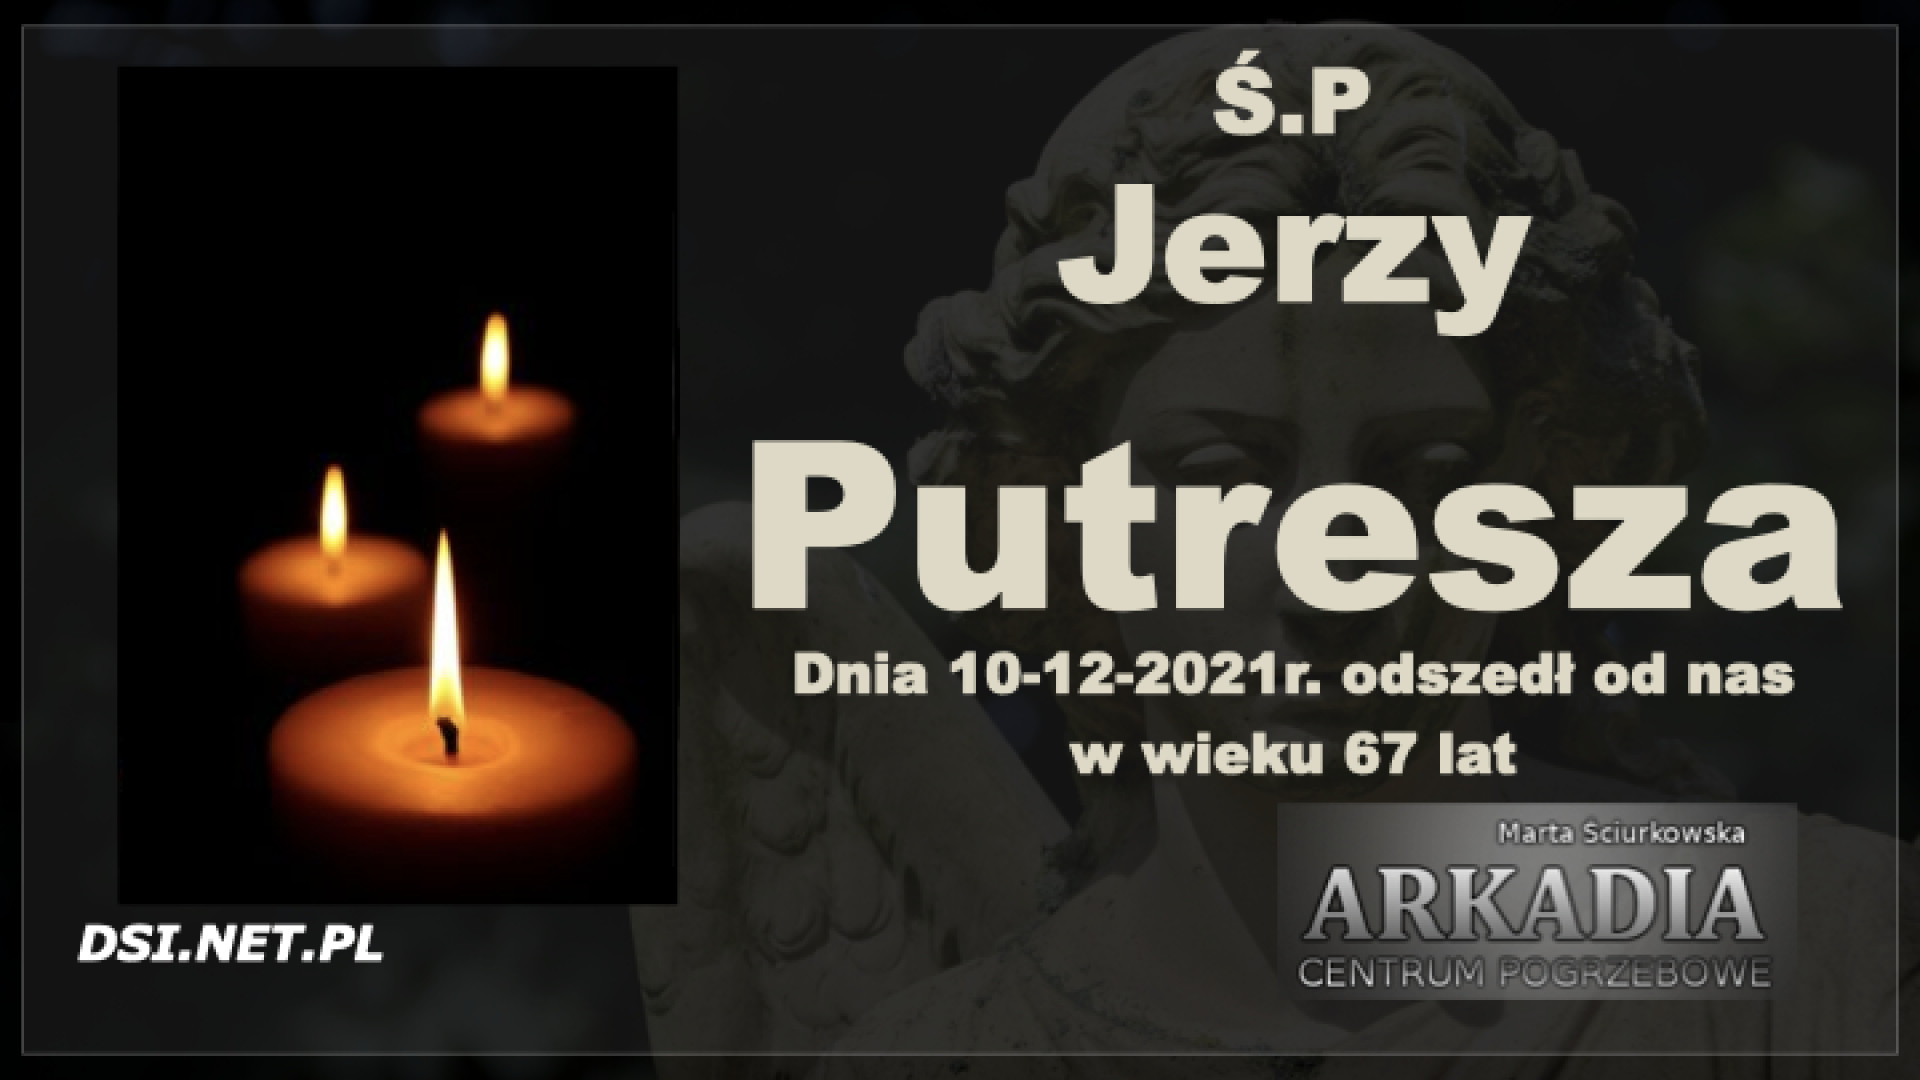 Ś.P. Jerzy Putresza